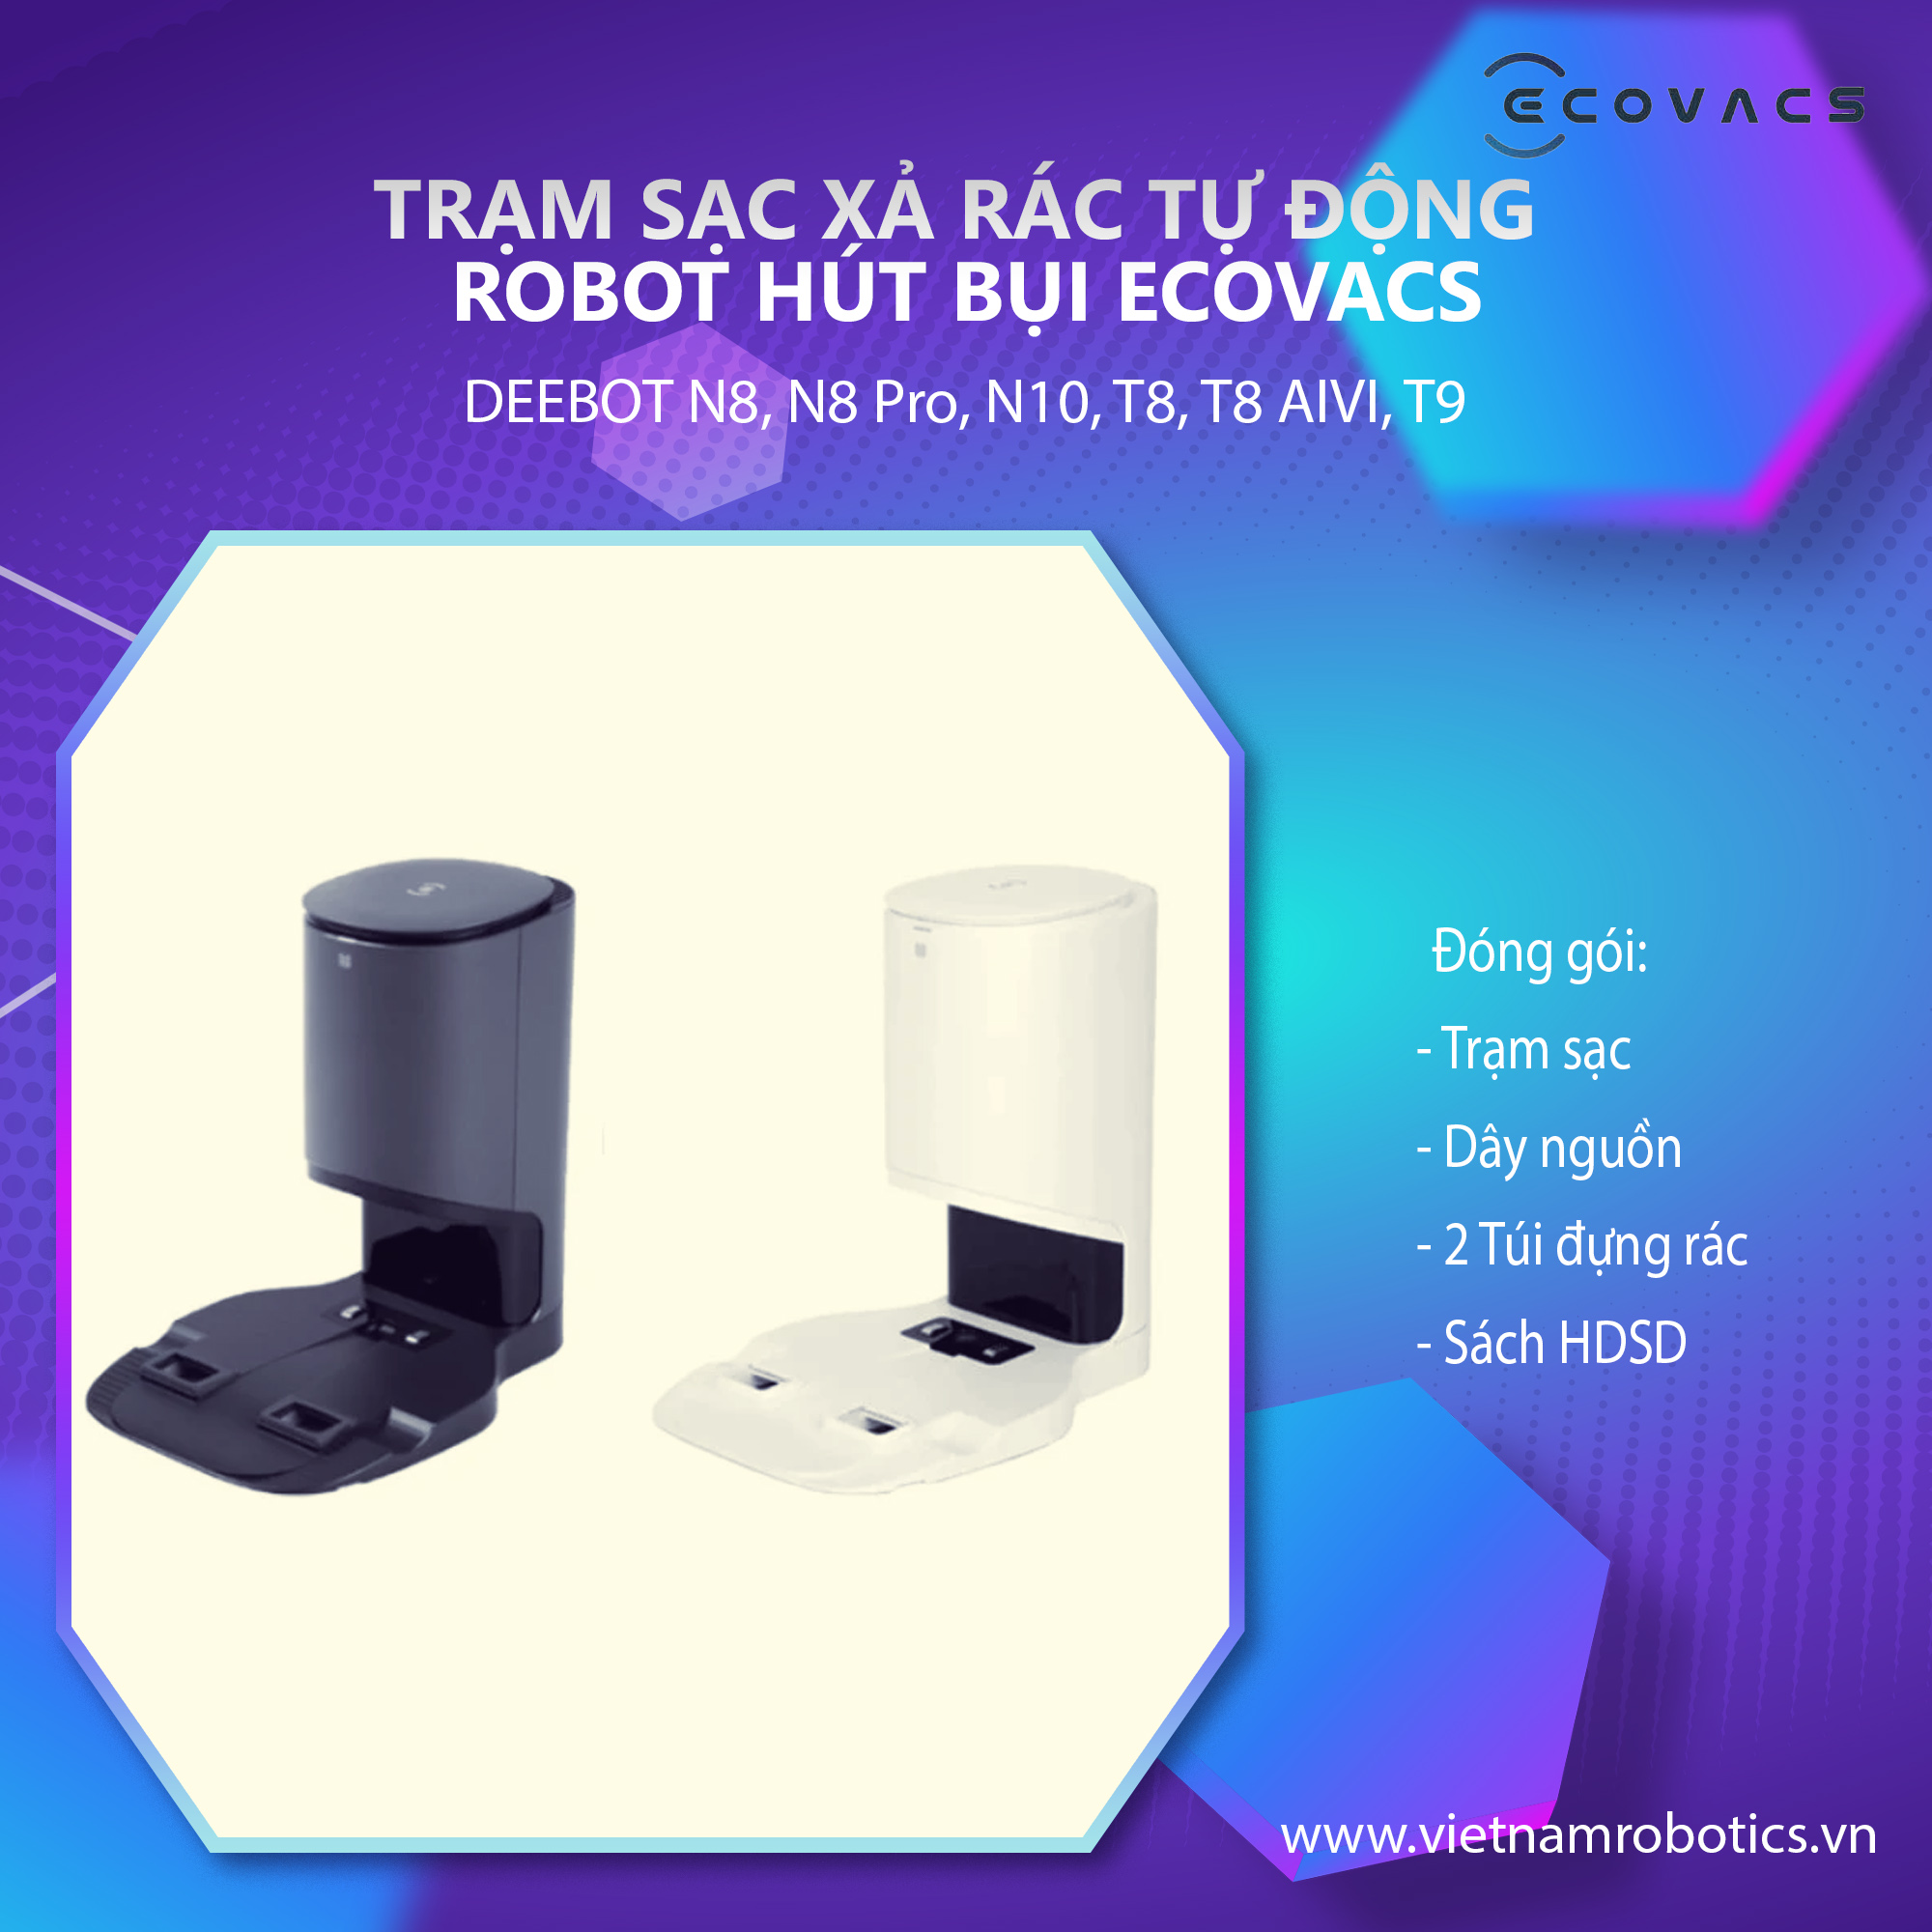 Dock sạc hút rác tự động cho robot hút bụi lau nhà Ecovacs Deebot N8, N8 Pro, N10, T8, T8 AIVI, T9 - Phiên bản quốc tế - Bảo hành 24 tháng